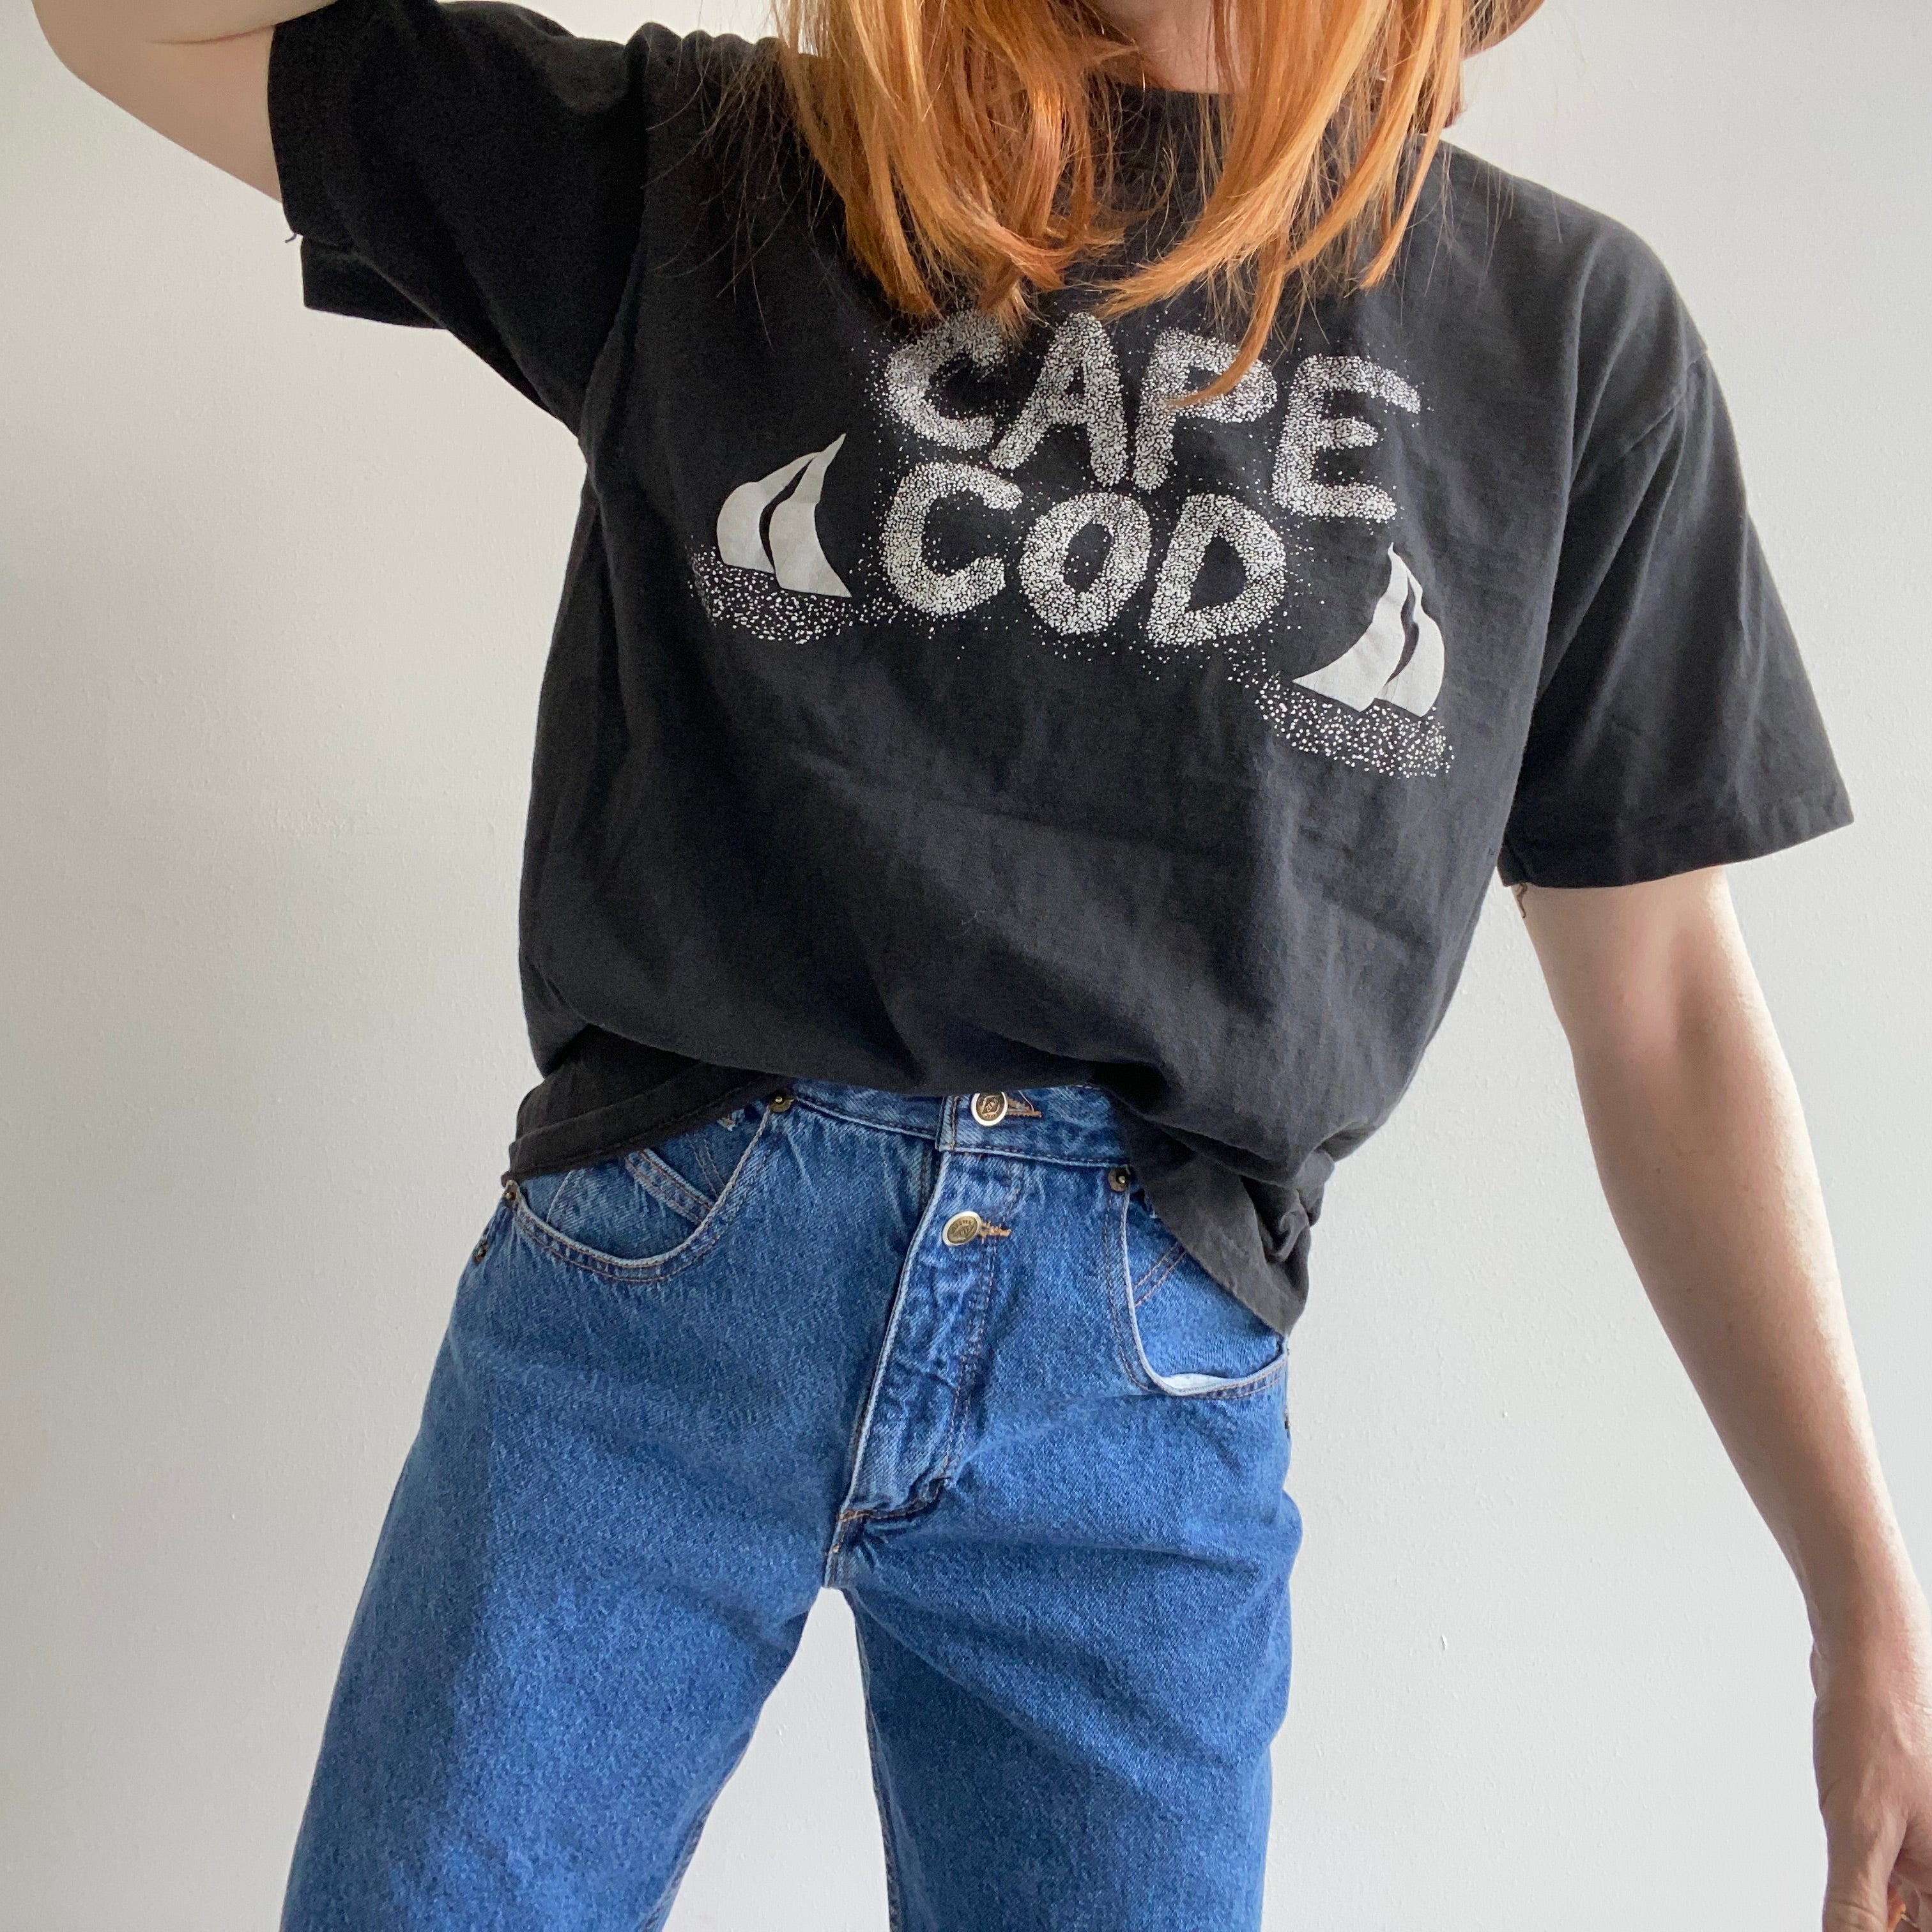 1980/90s Cape Cod Tourist T-Shirt